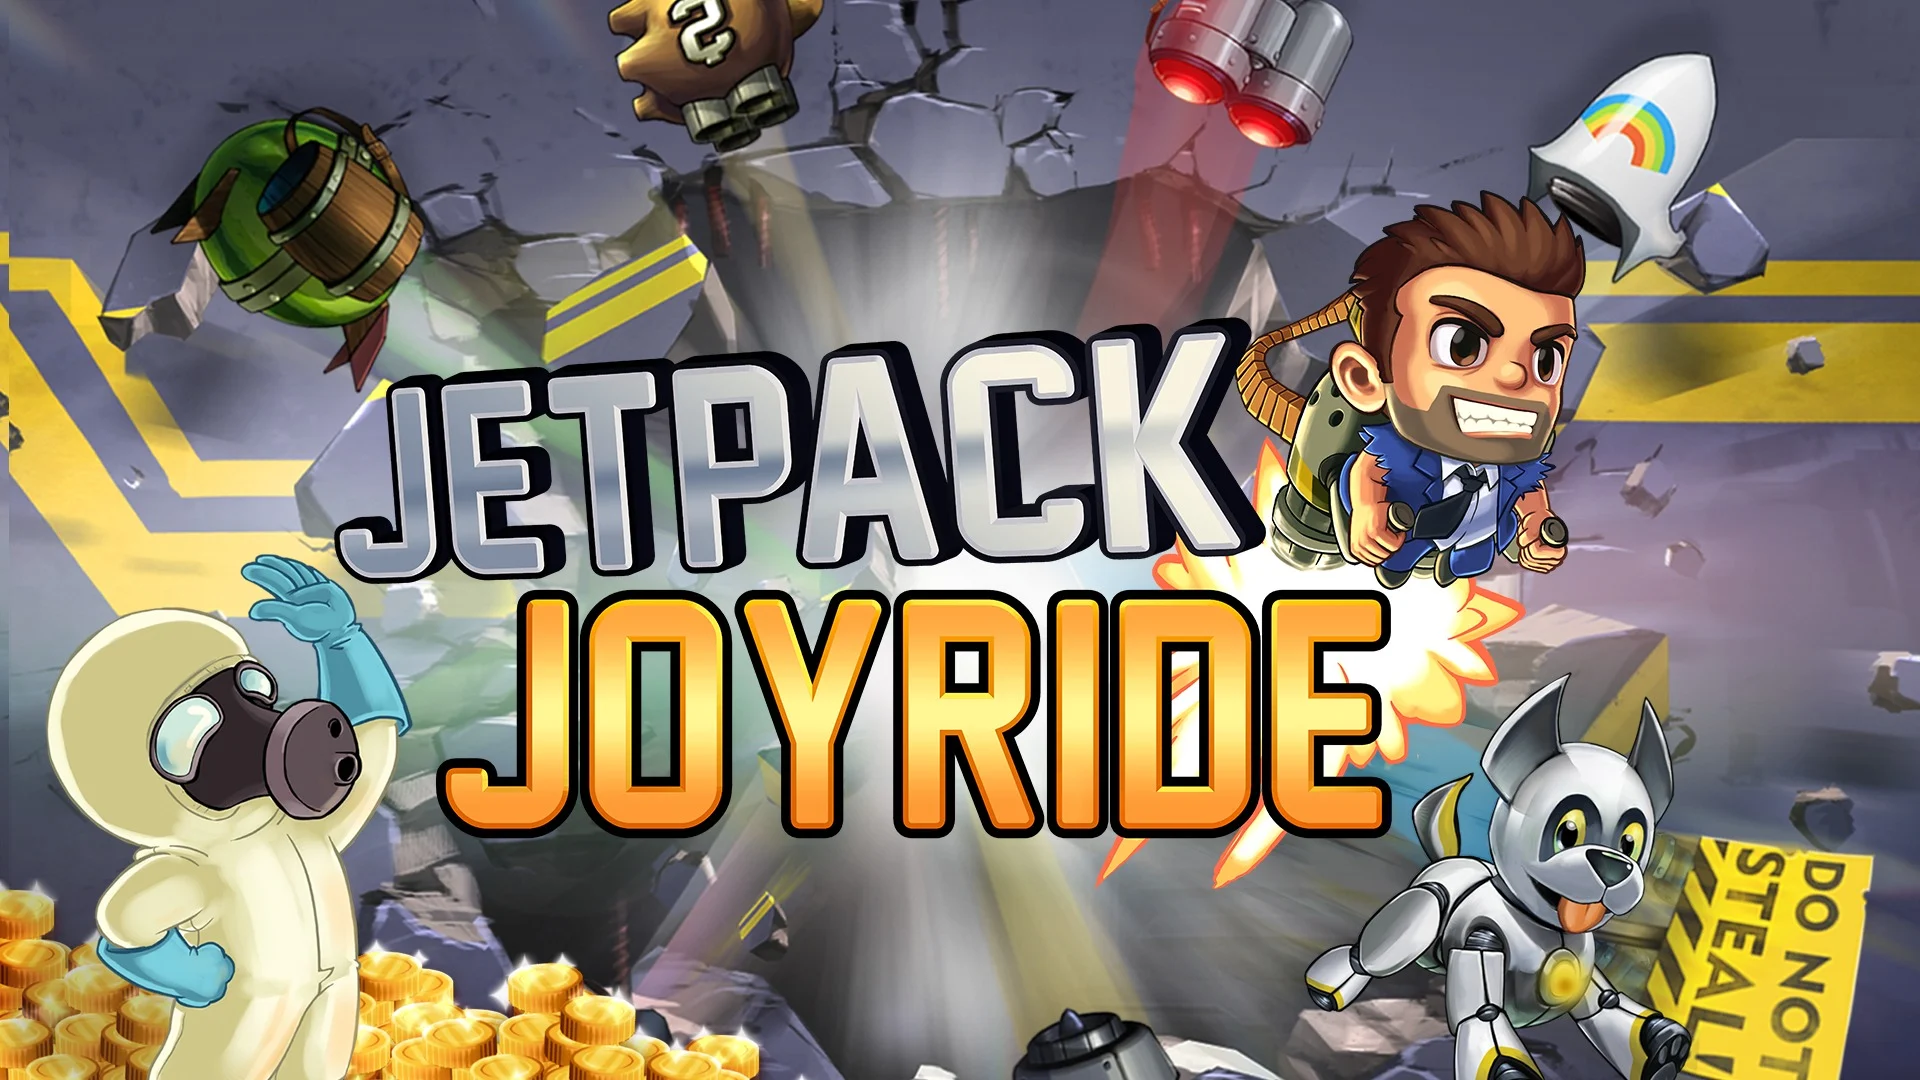 Jetpack Joyride unlimited coins